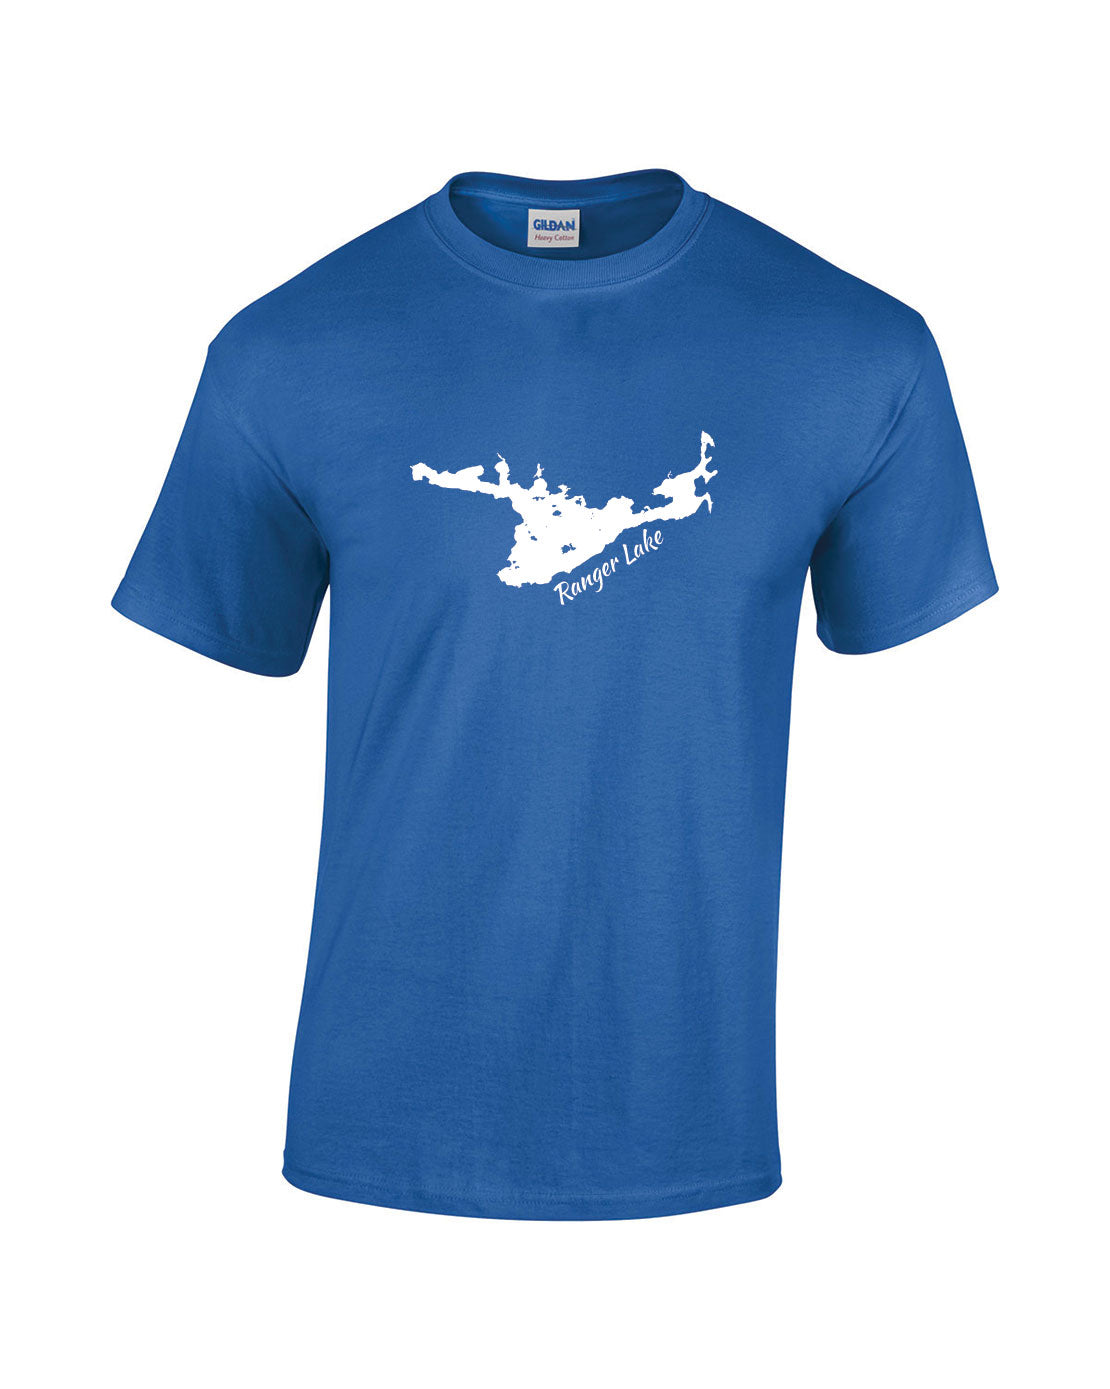 Ranger Lake T-Shirt